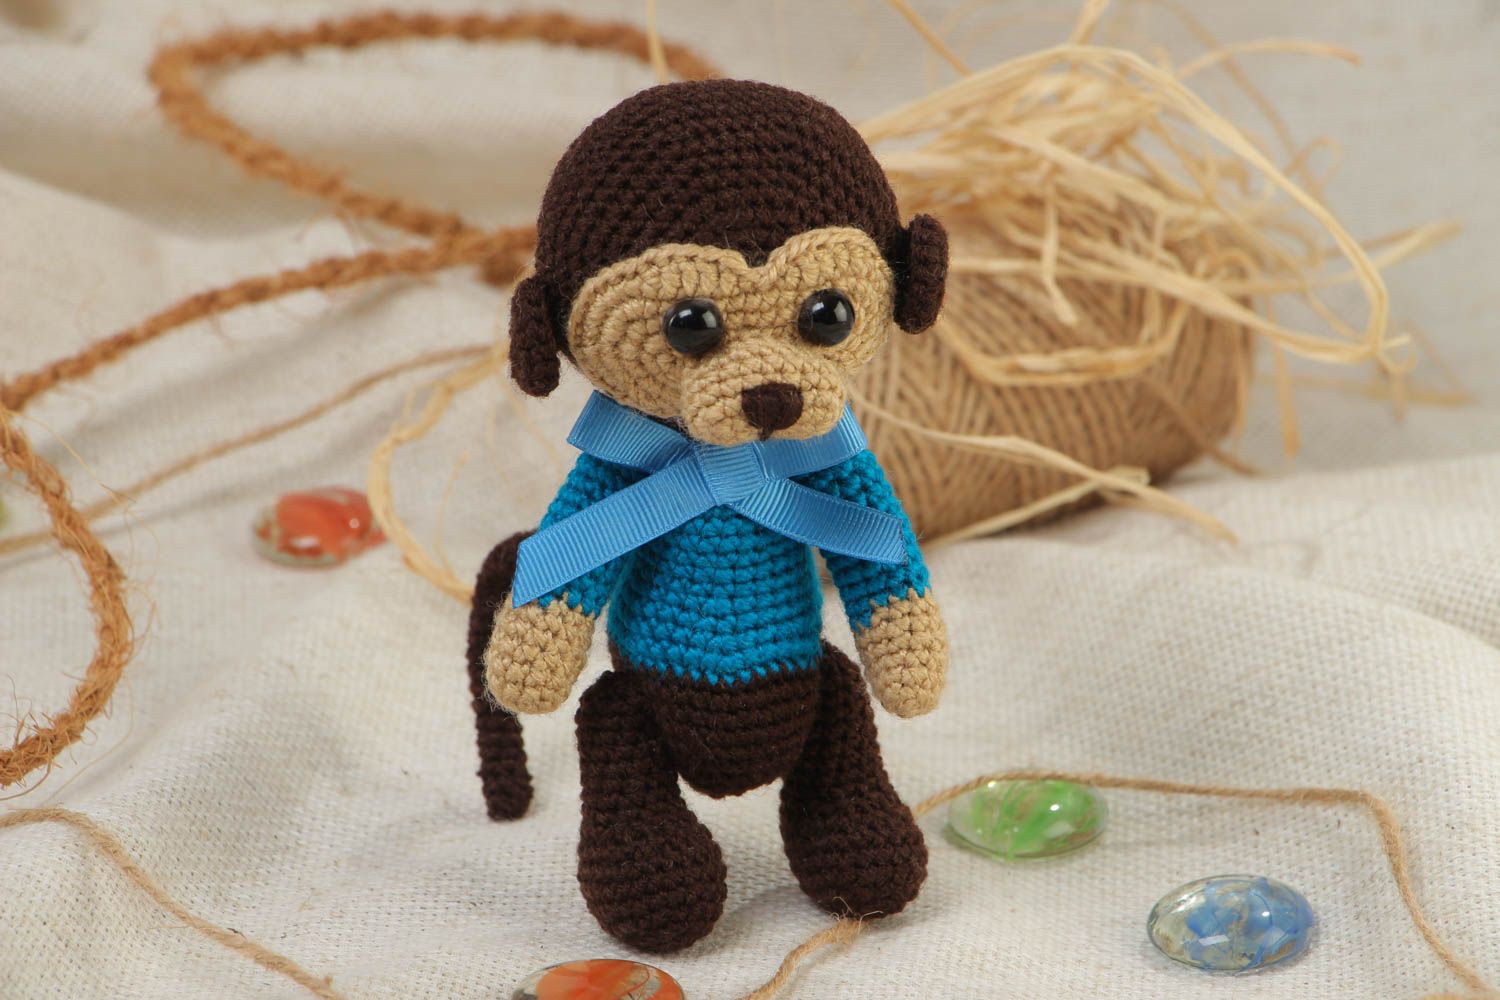 Мягкая вязаная игрушка в виде обезьянки в голубом свитере маленькая хэнд мейд фото 1